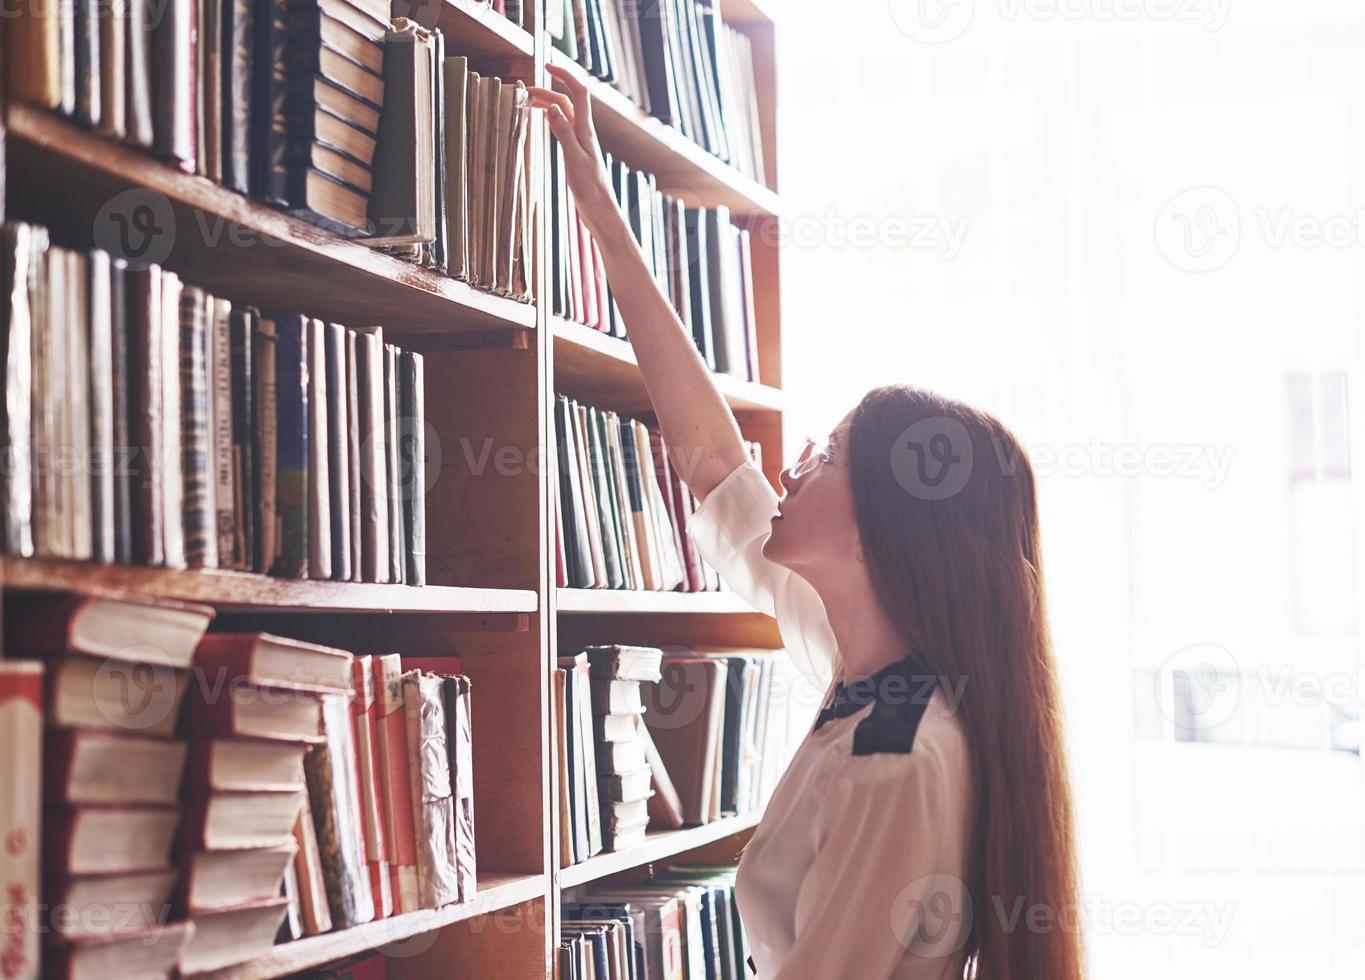 une jeune étudiante cherche le bon livre sur les étagères de l'ancienne bibliothèque universitaire photo